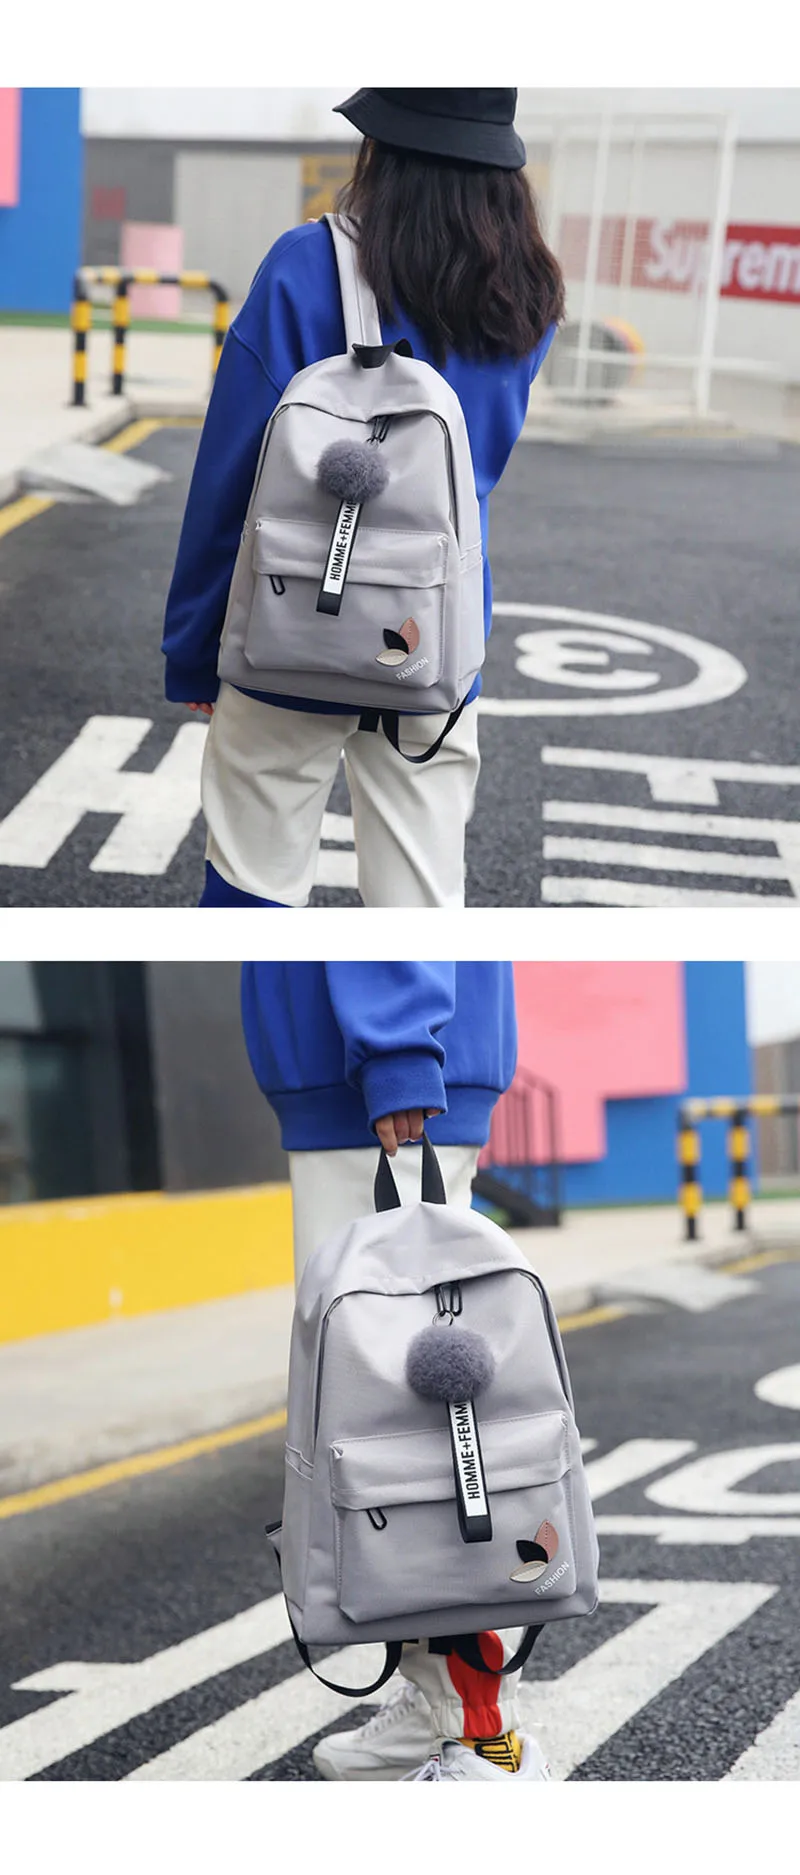 New Women's Nylon Backpack Female Backpacks School bag For Girls Fashion Rucksack Waterproof Travel Bag Bolsas Mochilas